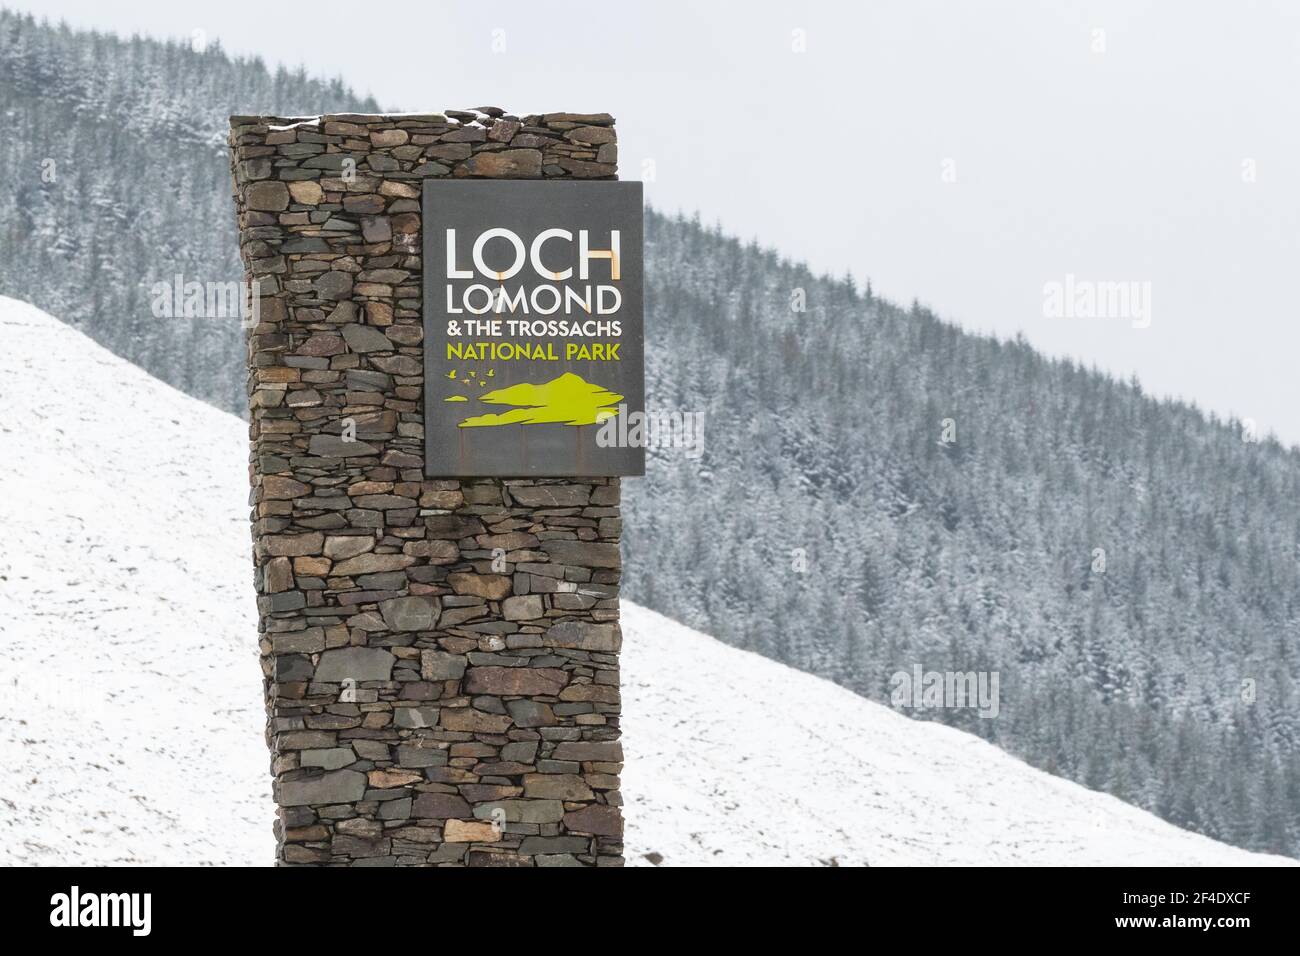 Loch Lomond und der Trossachs National Park Zeichen an der Grenze zwischen Stirling und Argyll und Bute council Bereiche auf der A82 Straße, Schottland, Großbritannien Stockfoto